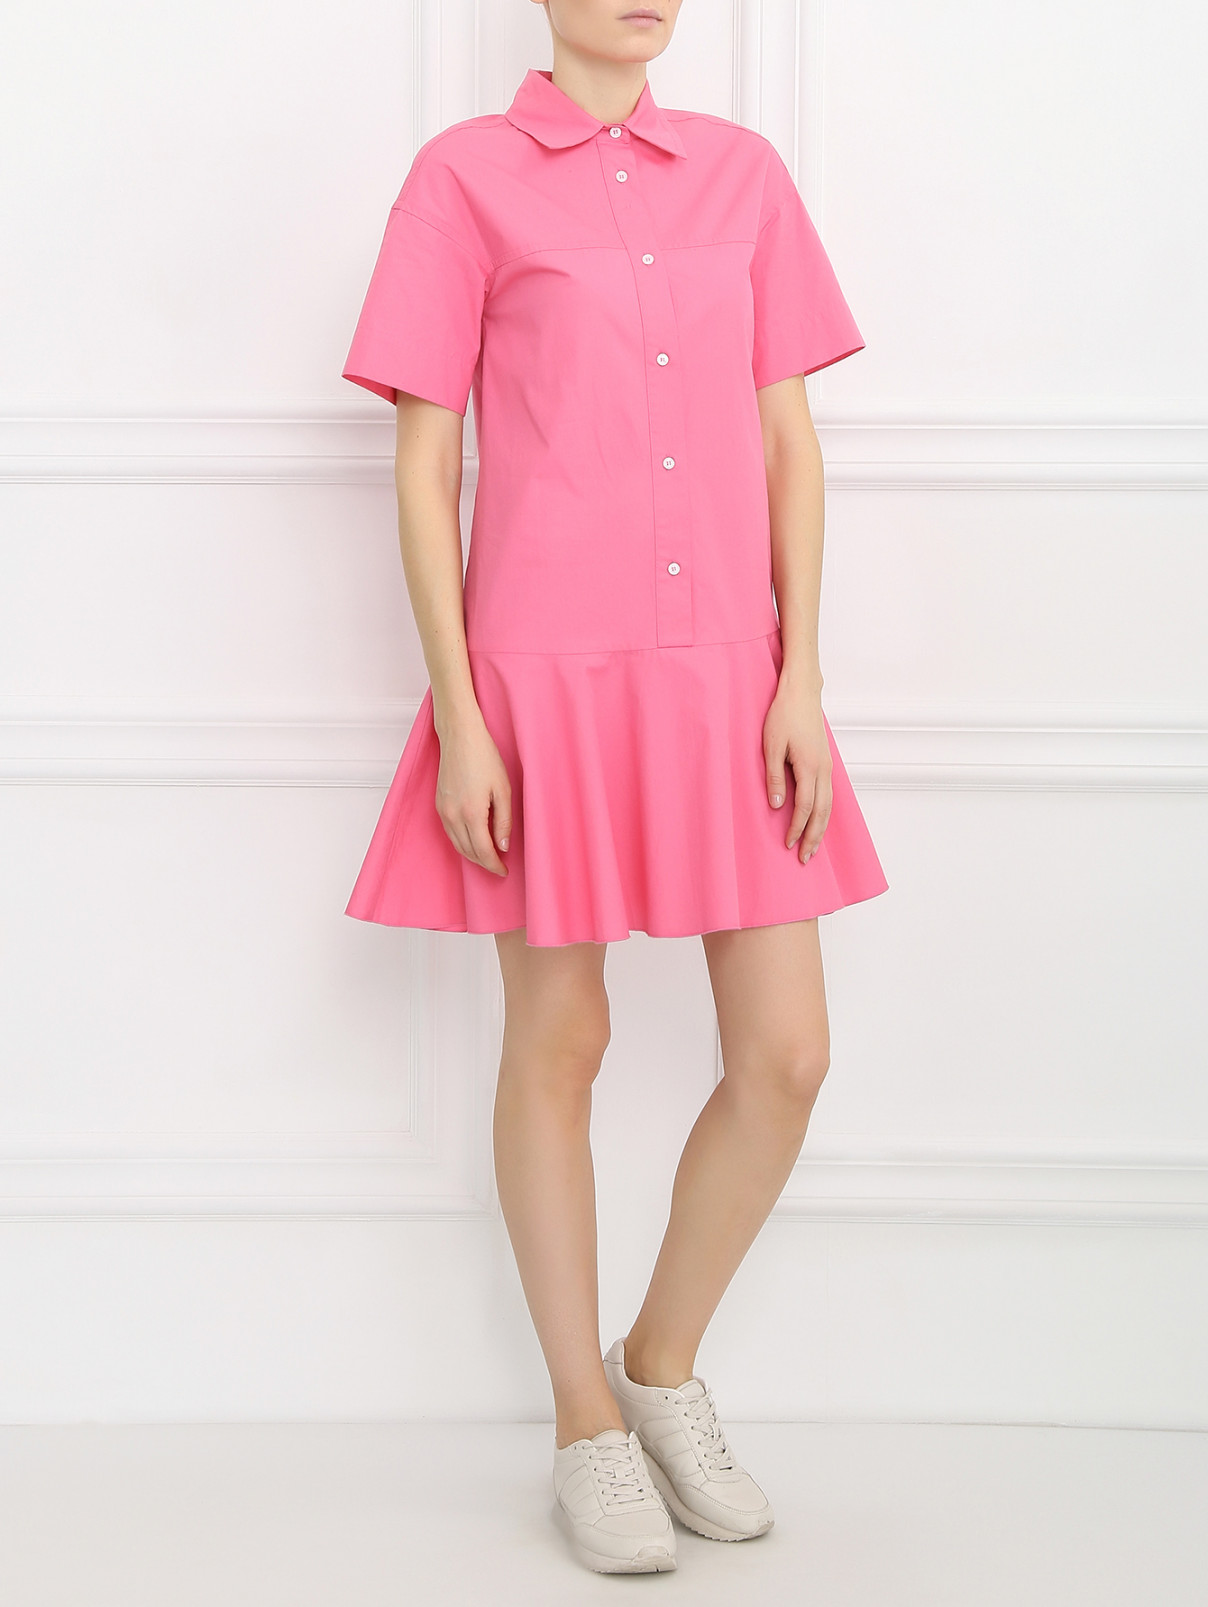 Платье-мини из хлопка Isola Marras  –  Модель Общий вид  – Цвет:  Розовый